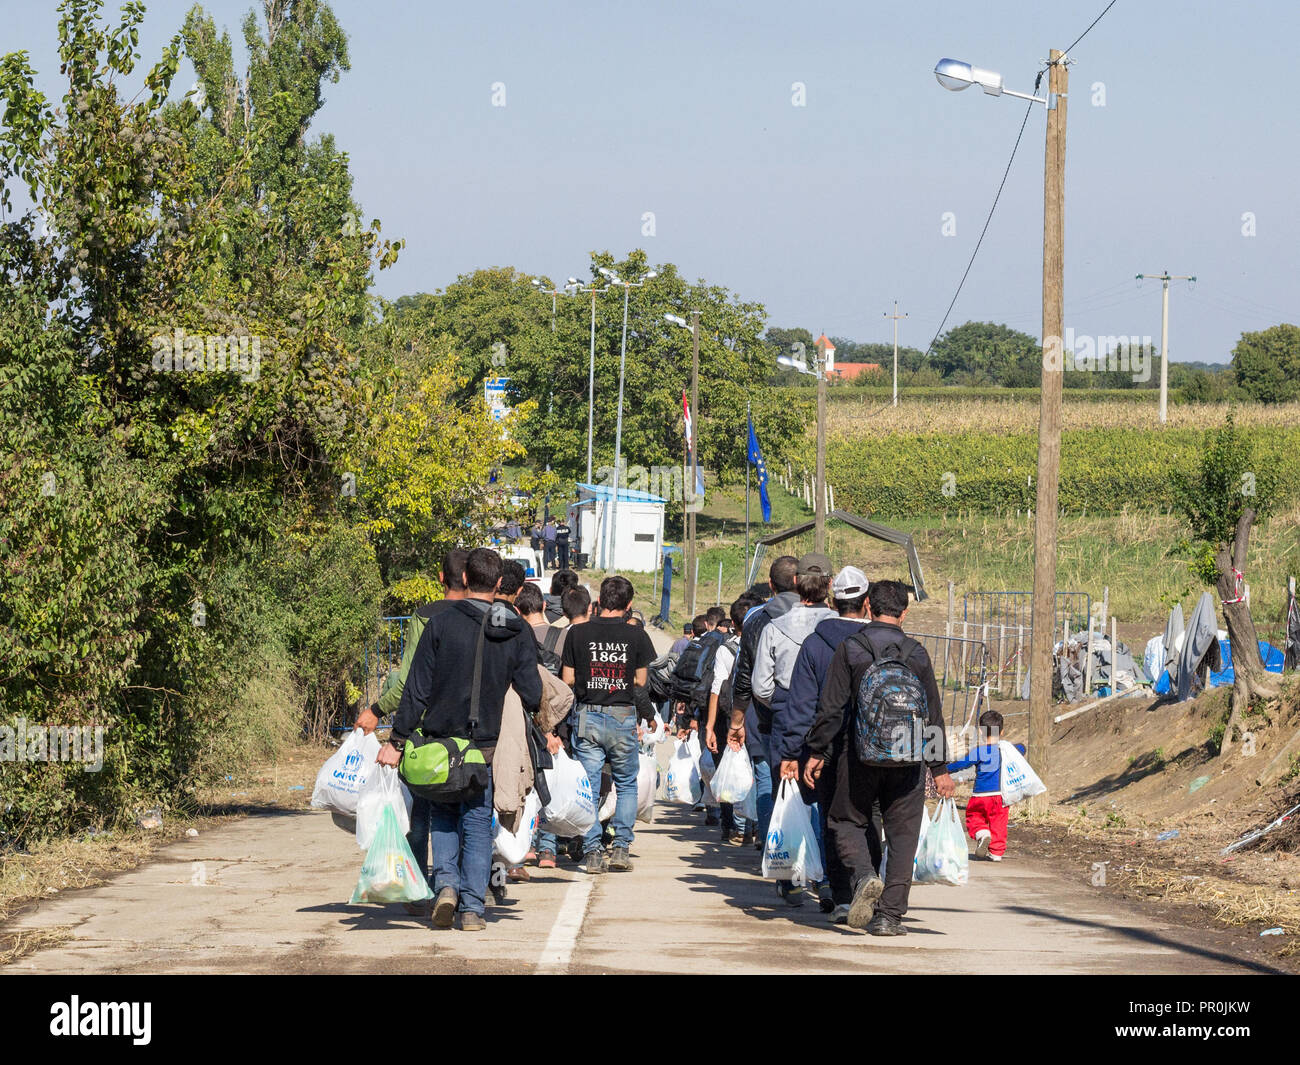 BERKASOVO, Serbien - OKTOBER 3, 2015: Flüchtlinge auf dem Weg zur kroatischen Grenzübergang Kroatien Serbien Grenze, zwischen den Städten Bapska Stockfoto